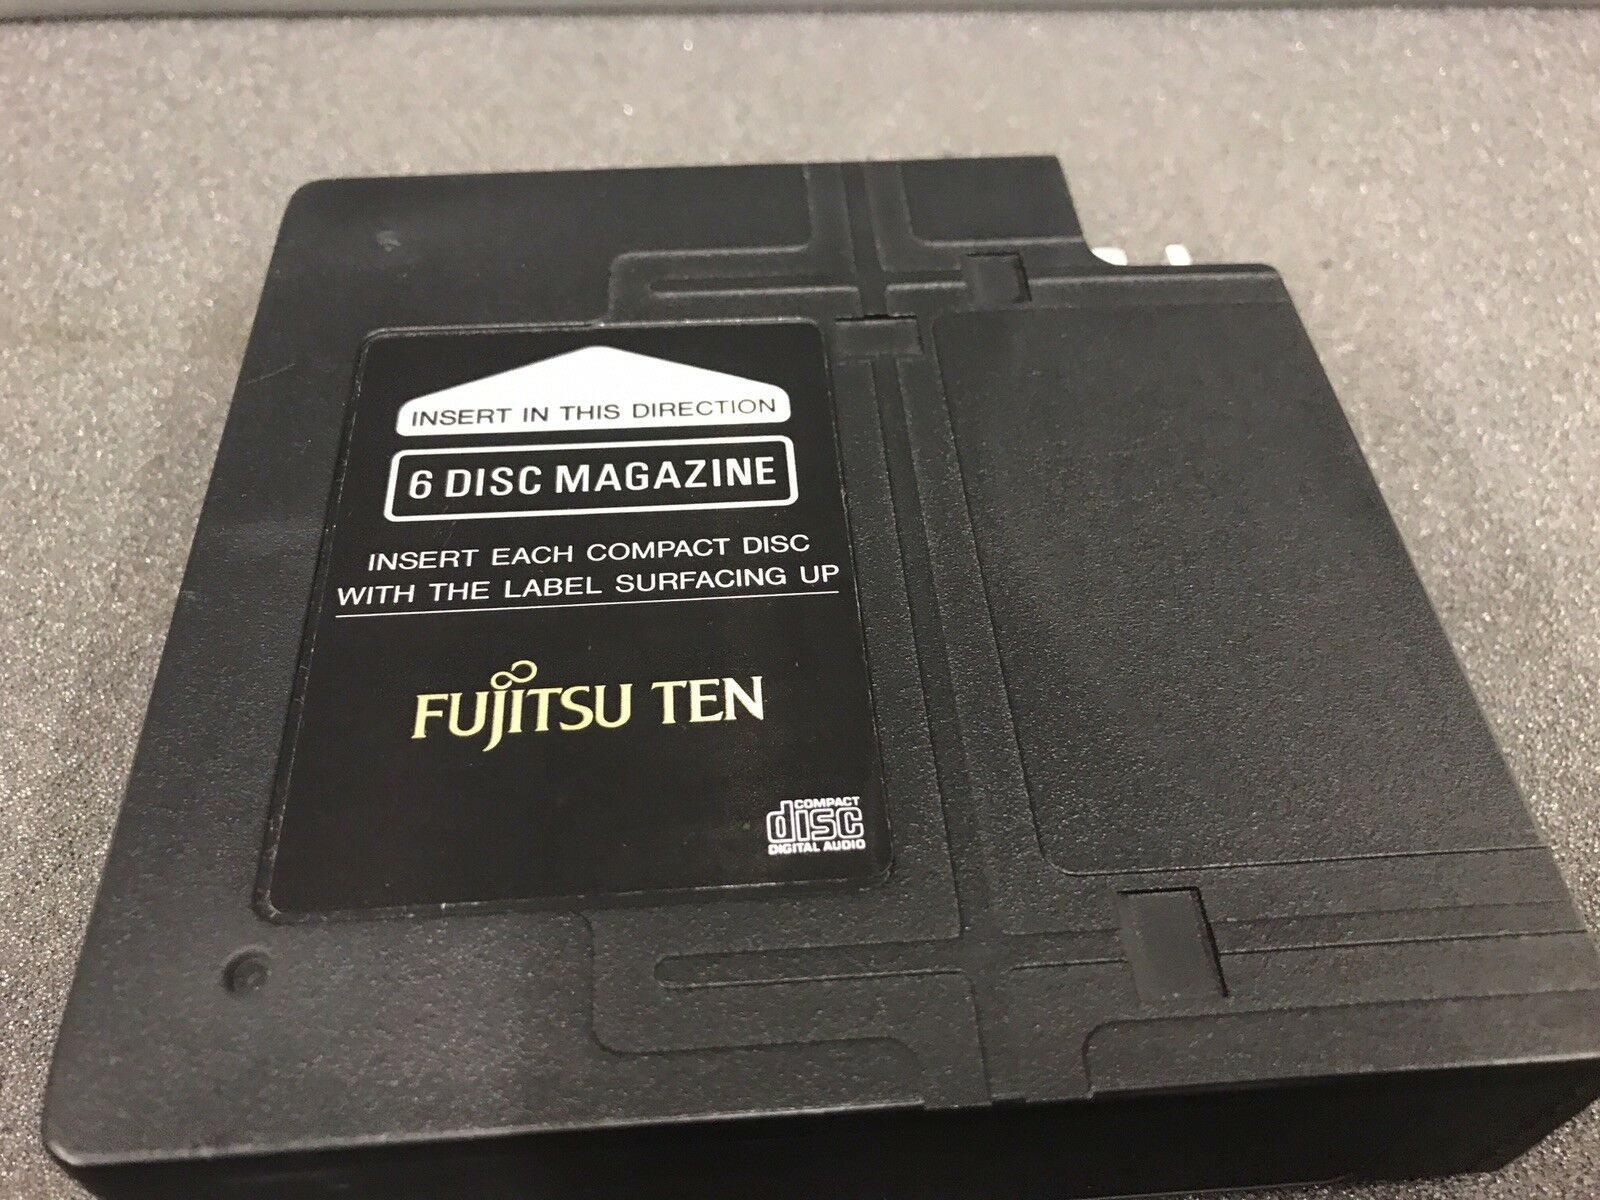 Fujitsu Ten 6 Disc Add On Car Cd Changer Stacker Shuffler Magazine Cartridge